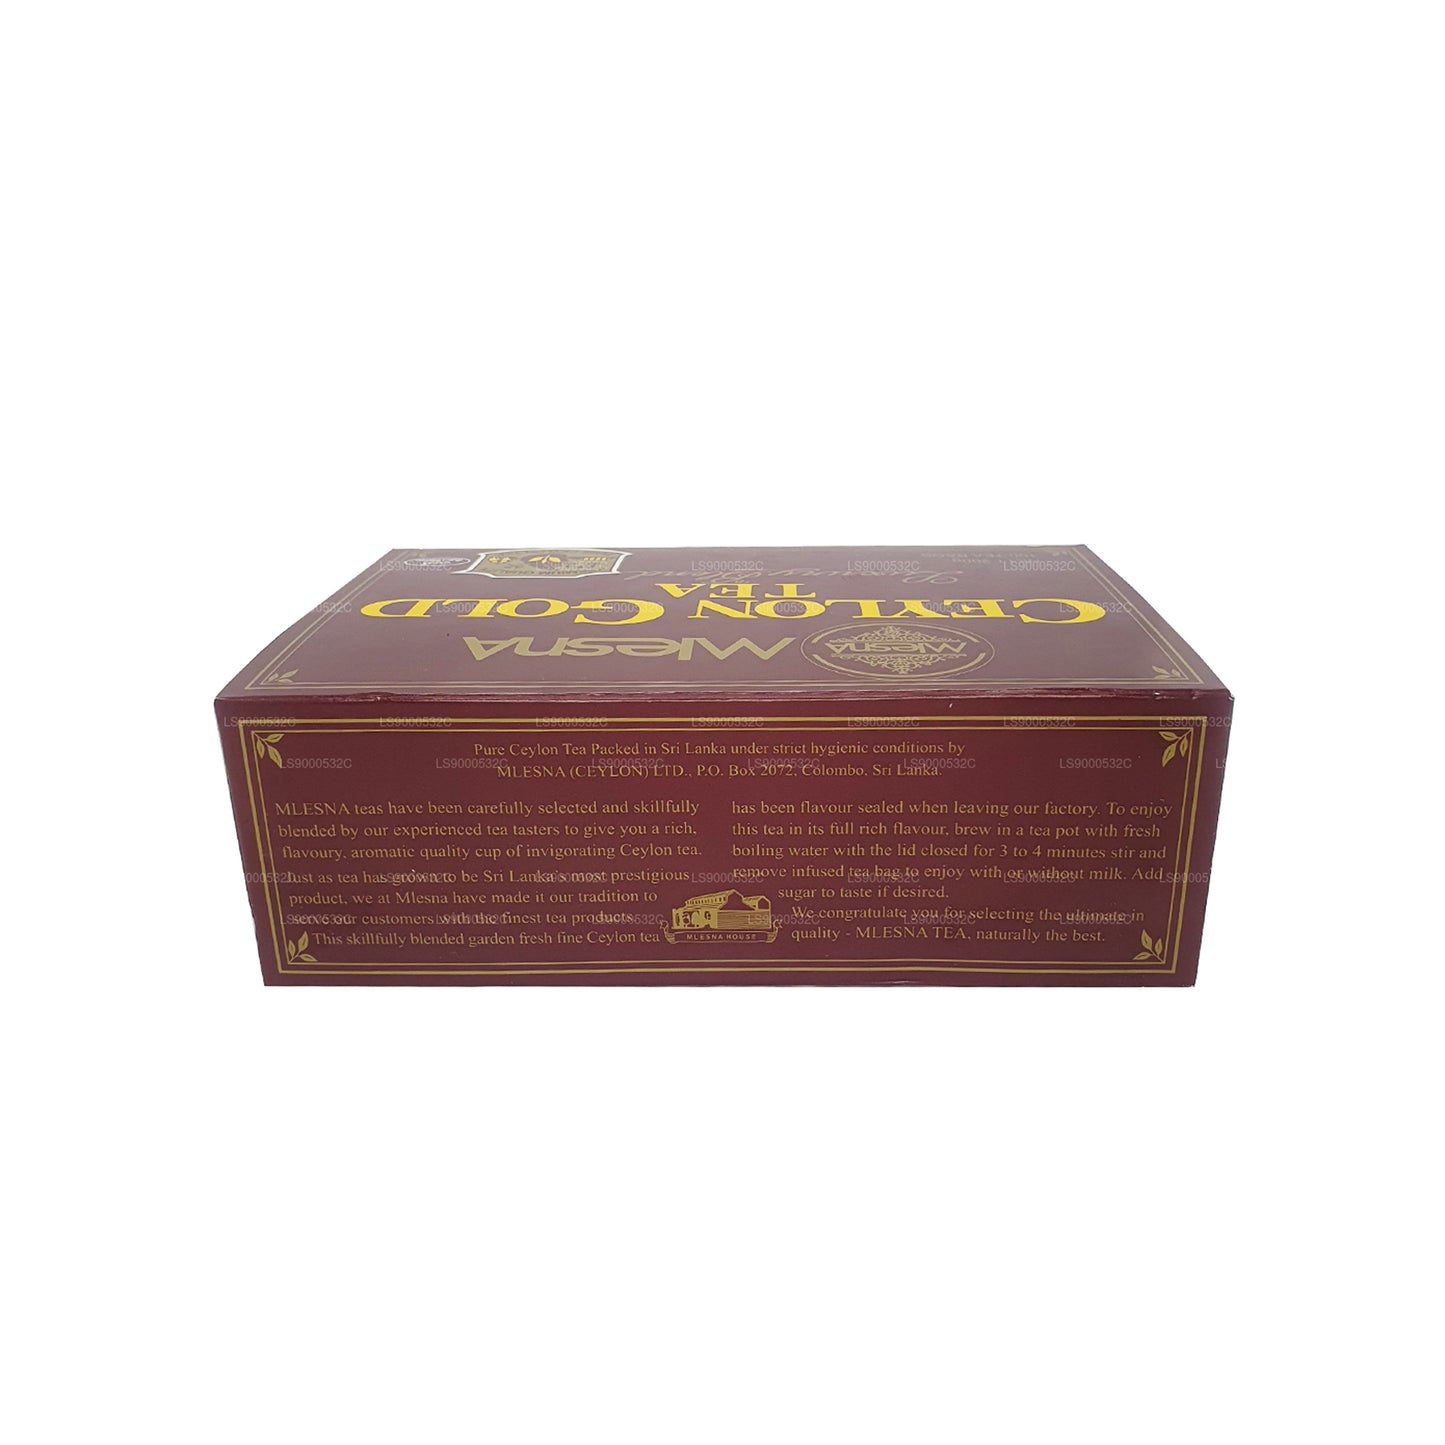 Mlesna Tea Ceylon Gold 100 Teebeutel (200 g) mit Band und Etikett